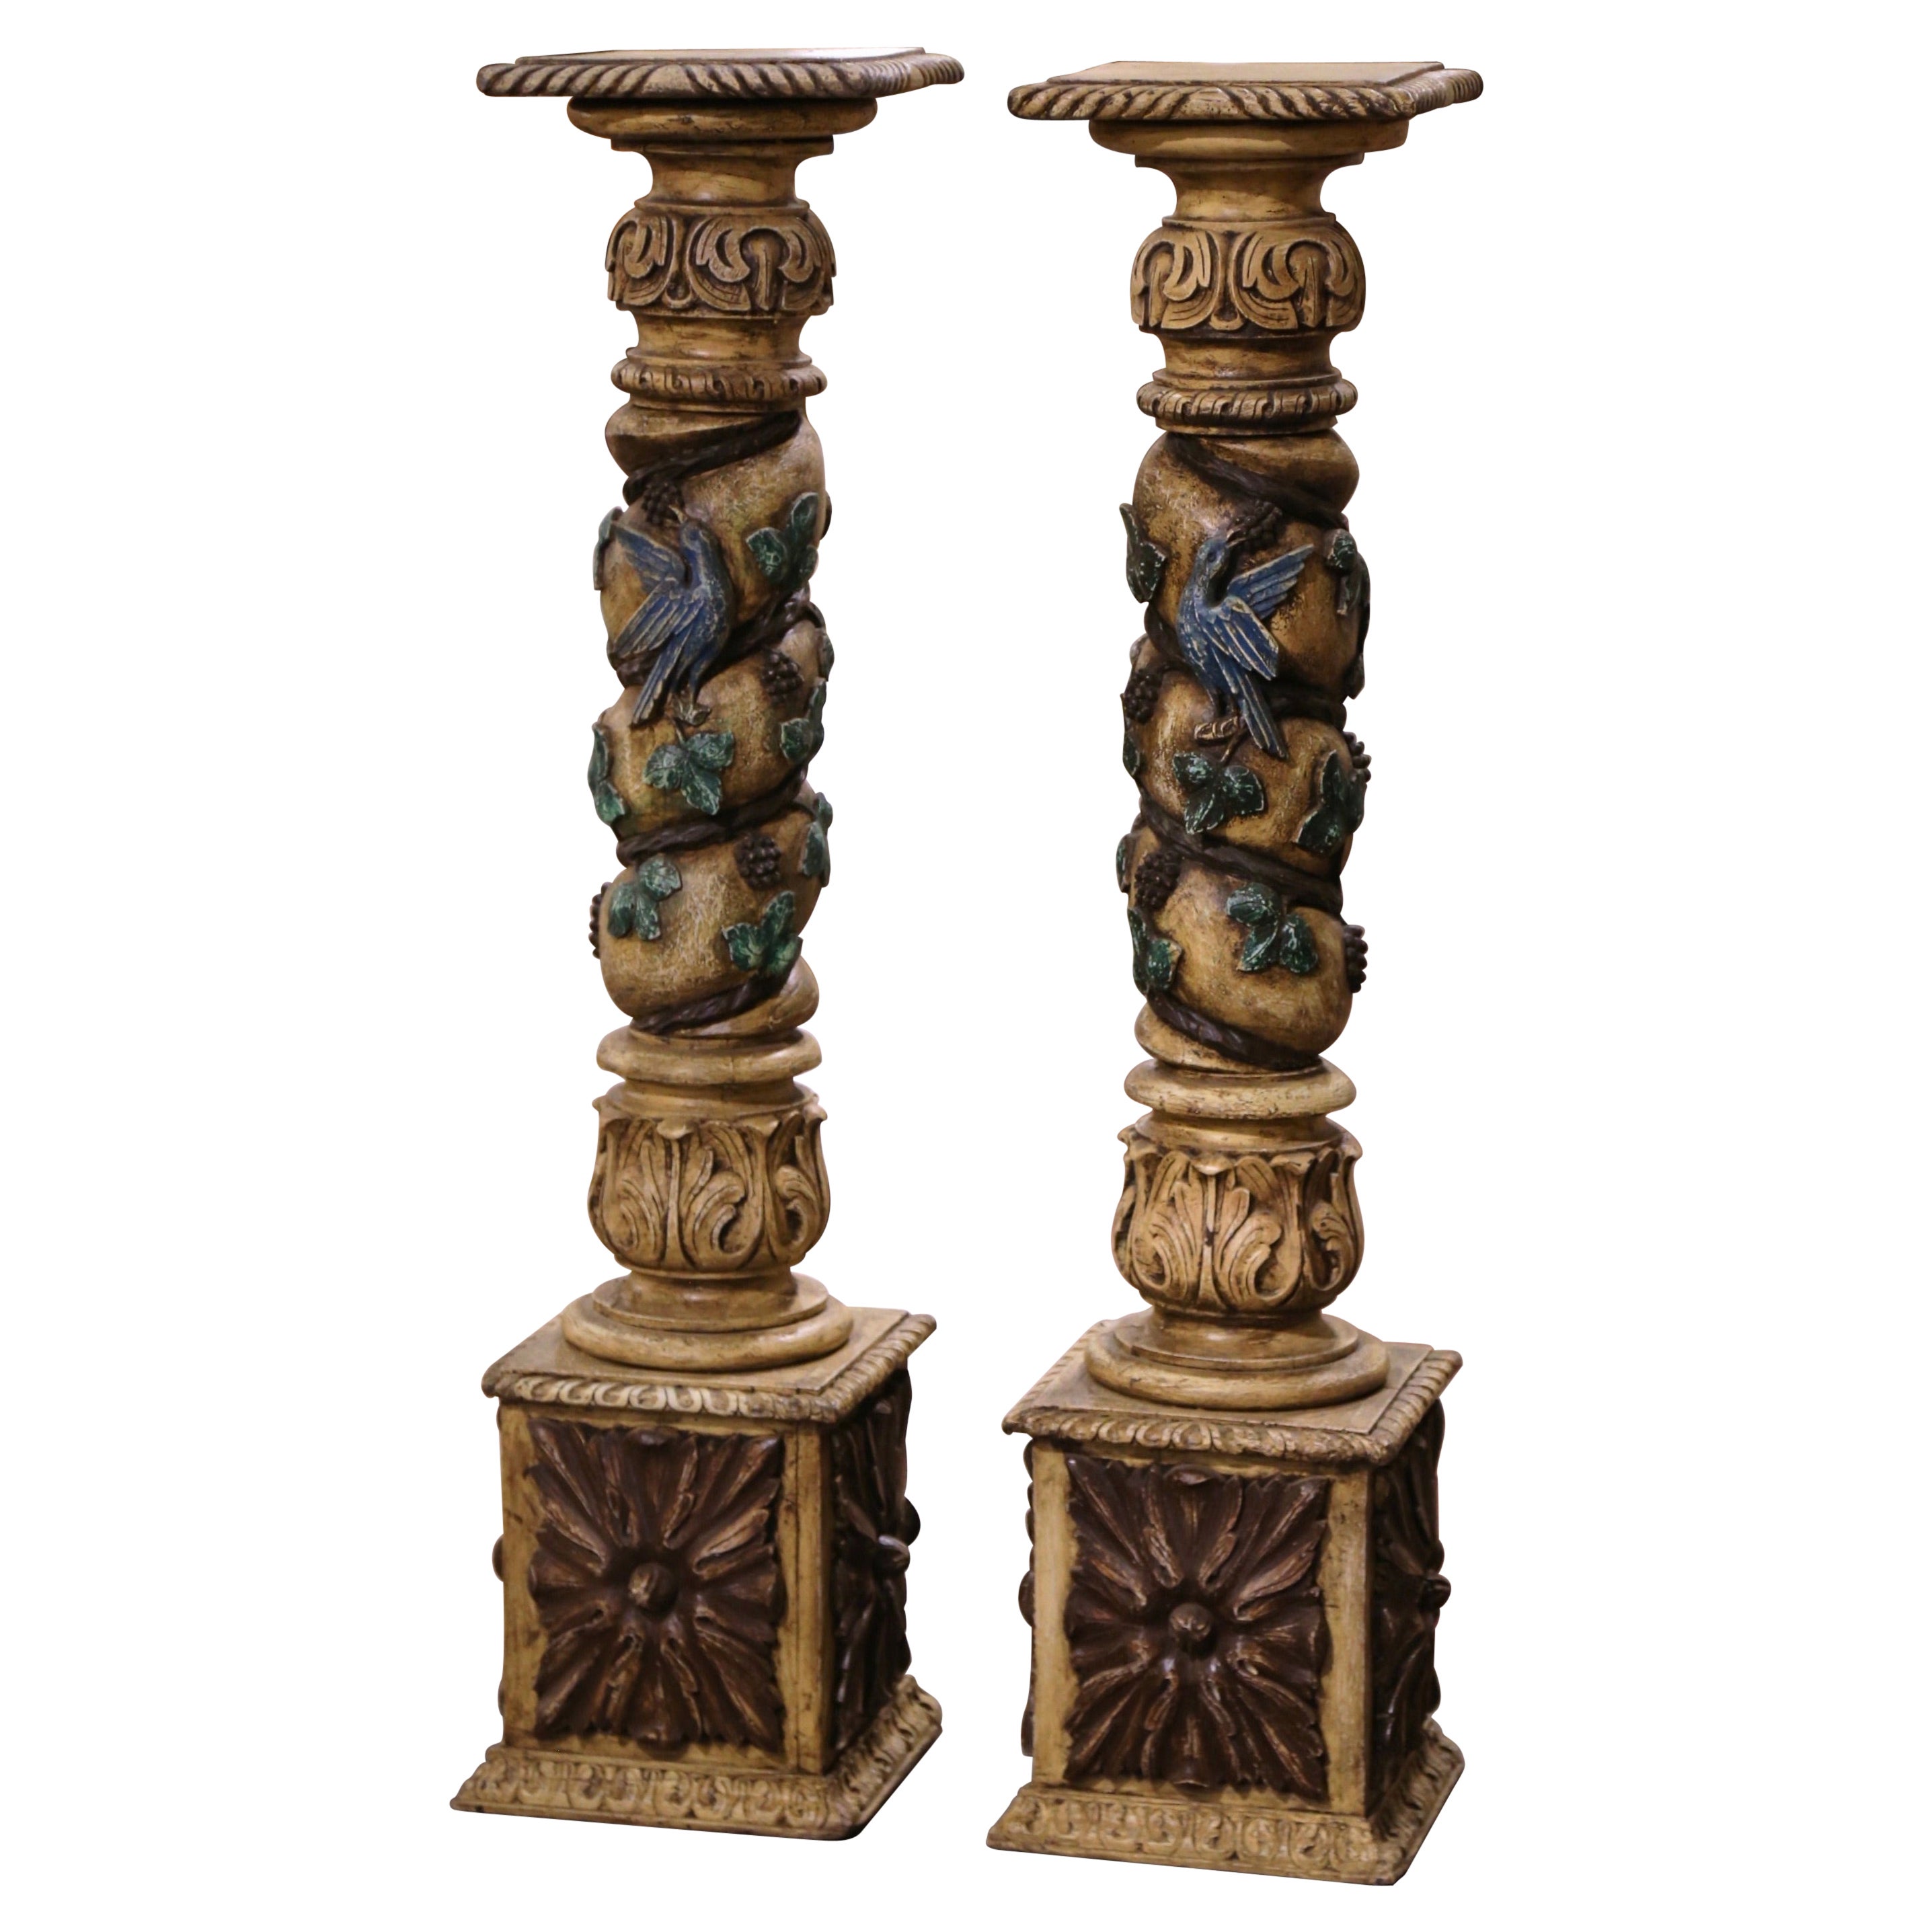 Paire de colonnes polychromes françaises du 18ème siècle sculptées avec vignes, raisins et feuilles